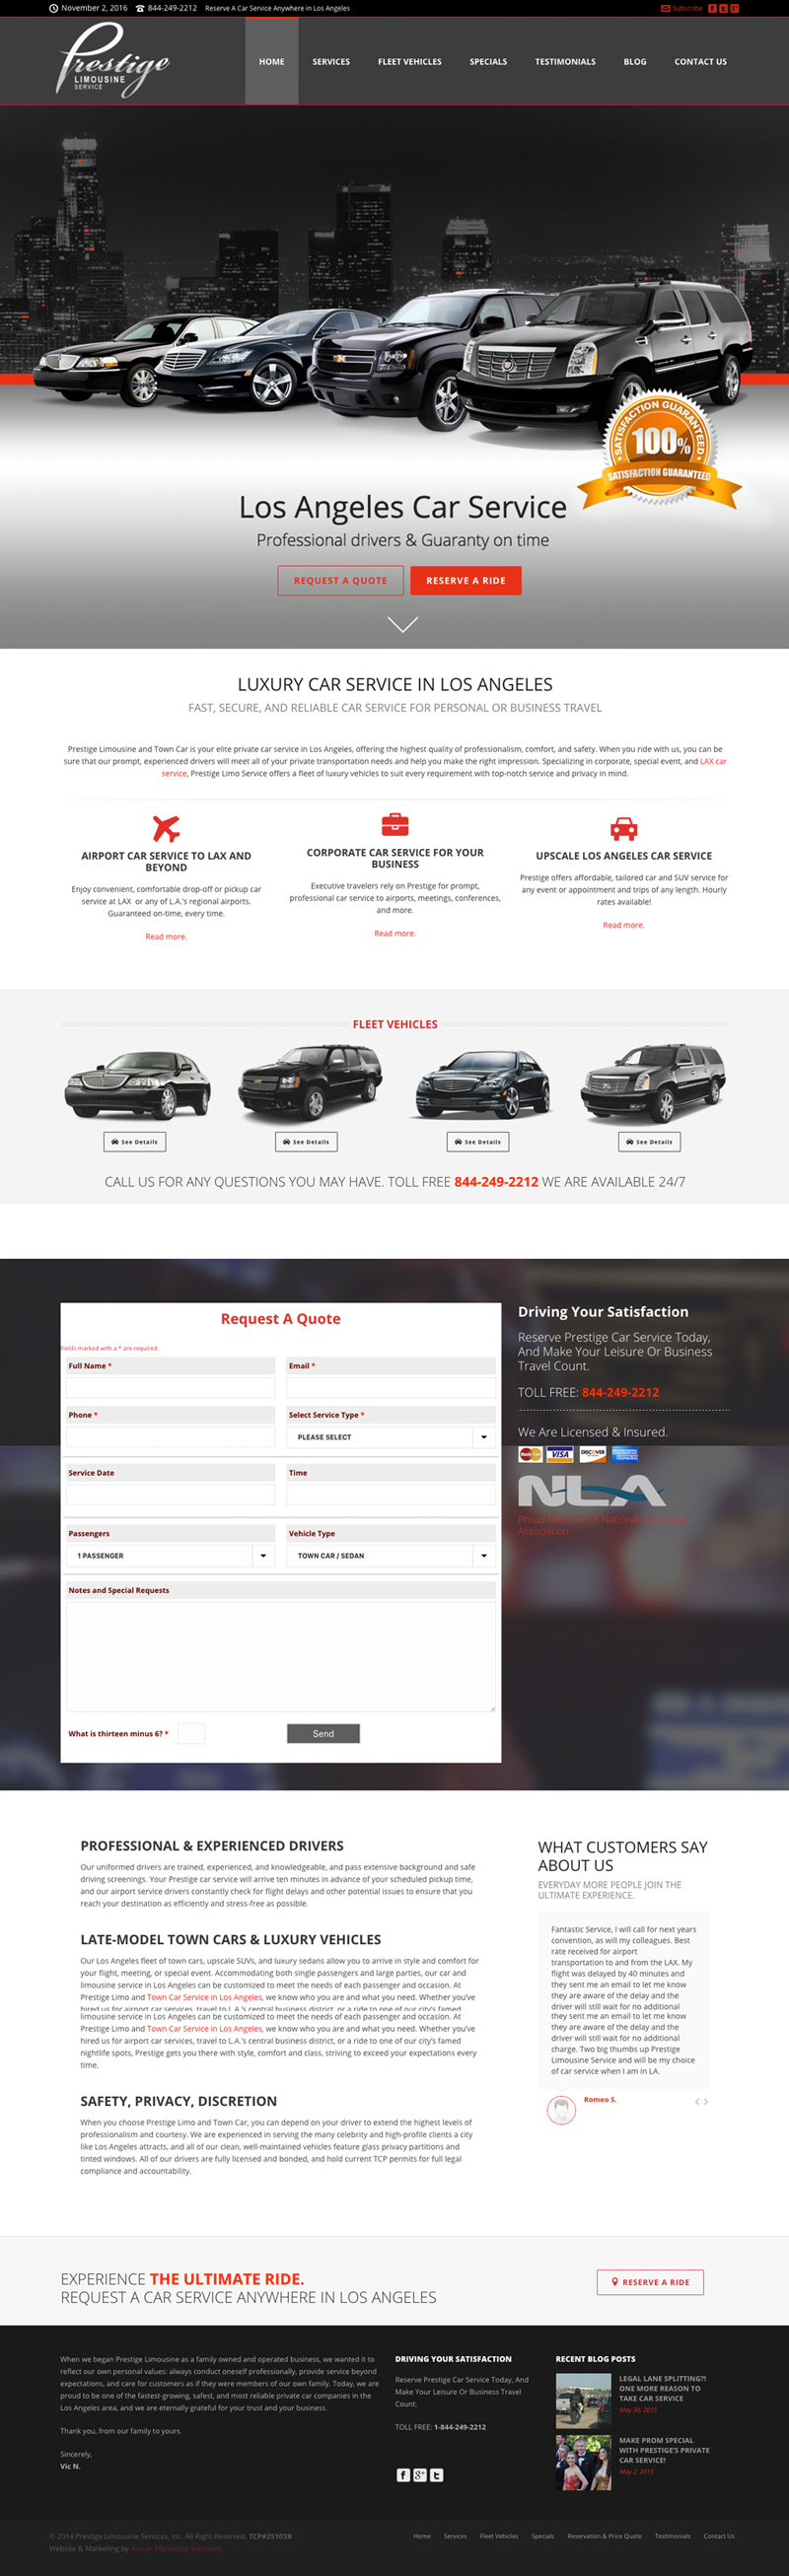 Prestige Limousine Service - Website